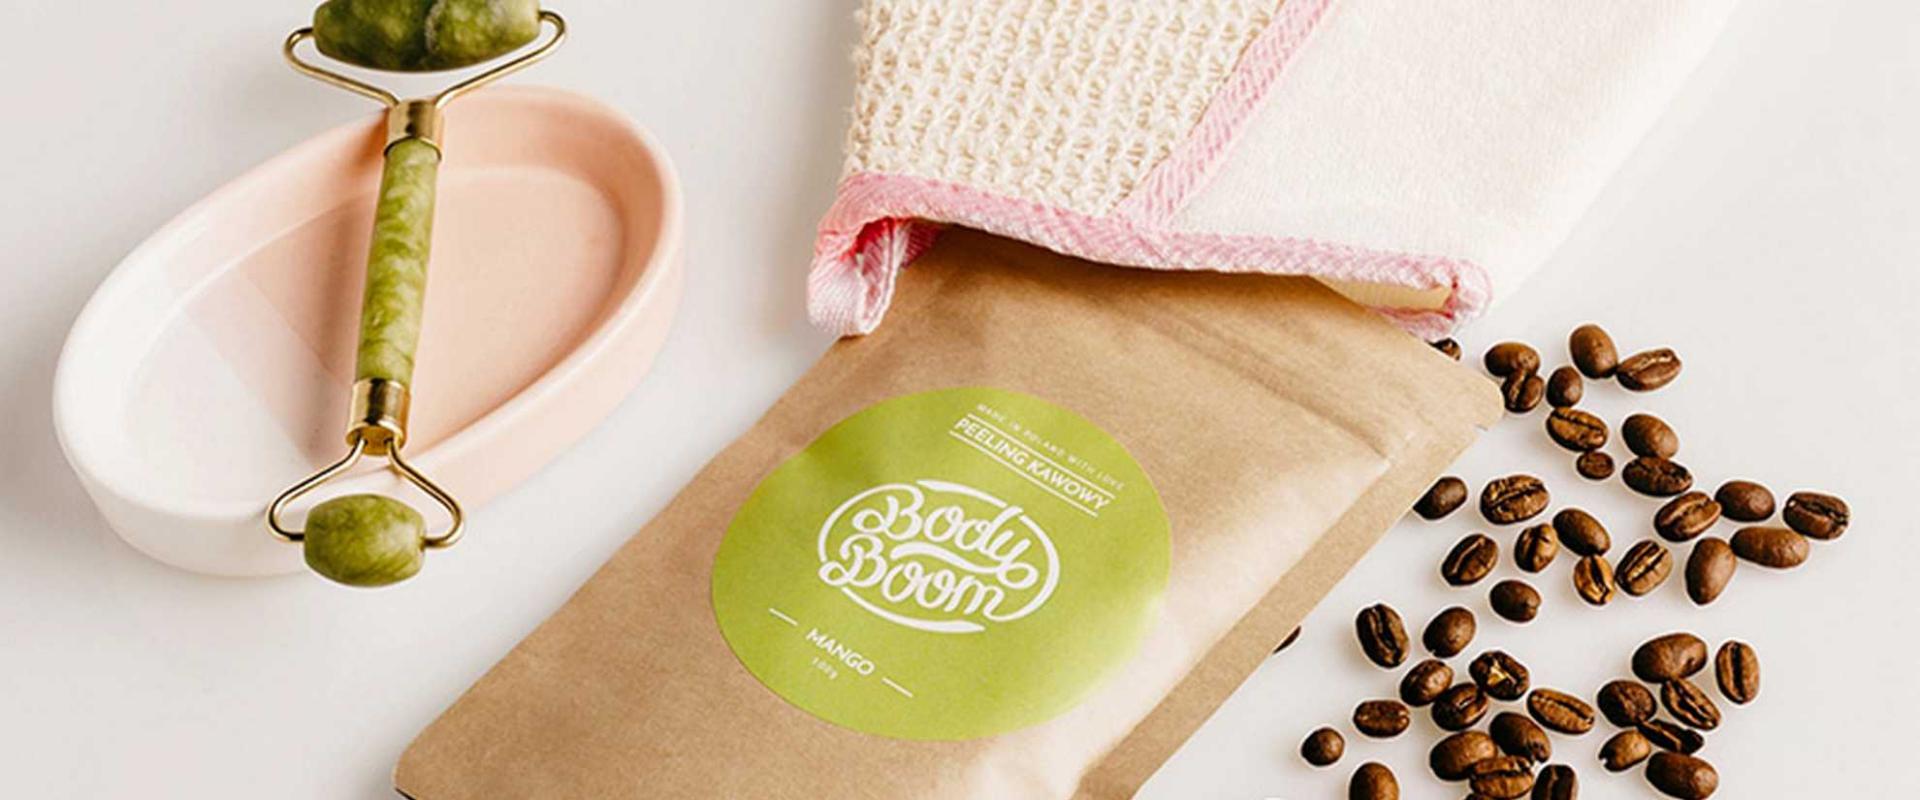 Kosmetyki BodyBoom dostępne w sieci Rossmann - dystrybucja marki rozwija się po udanej akwizycji przez Bielendę